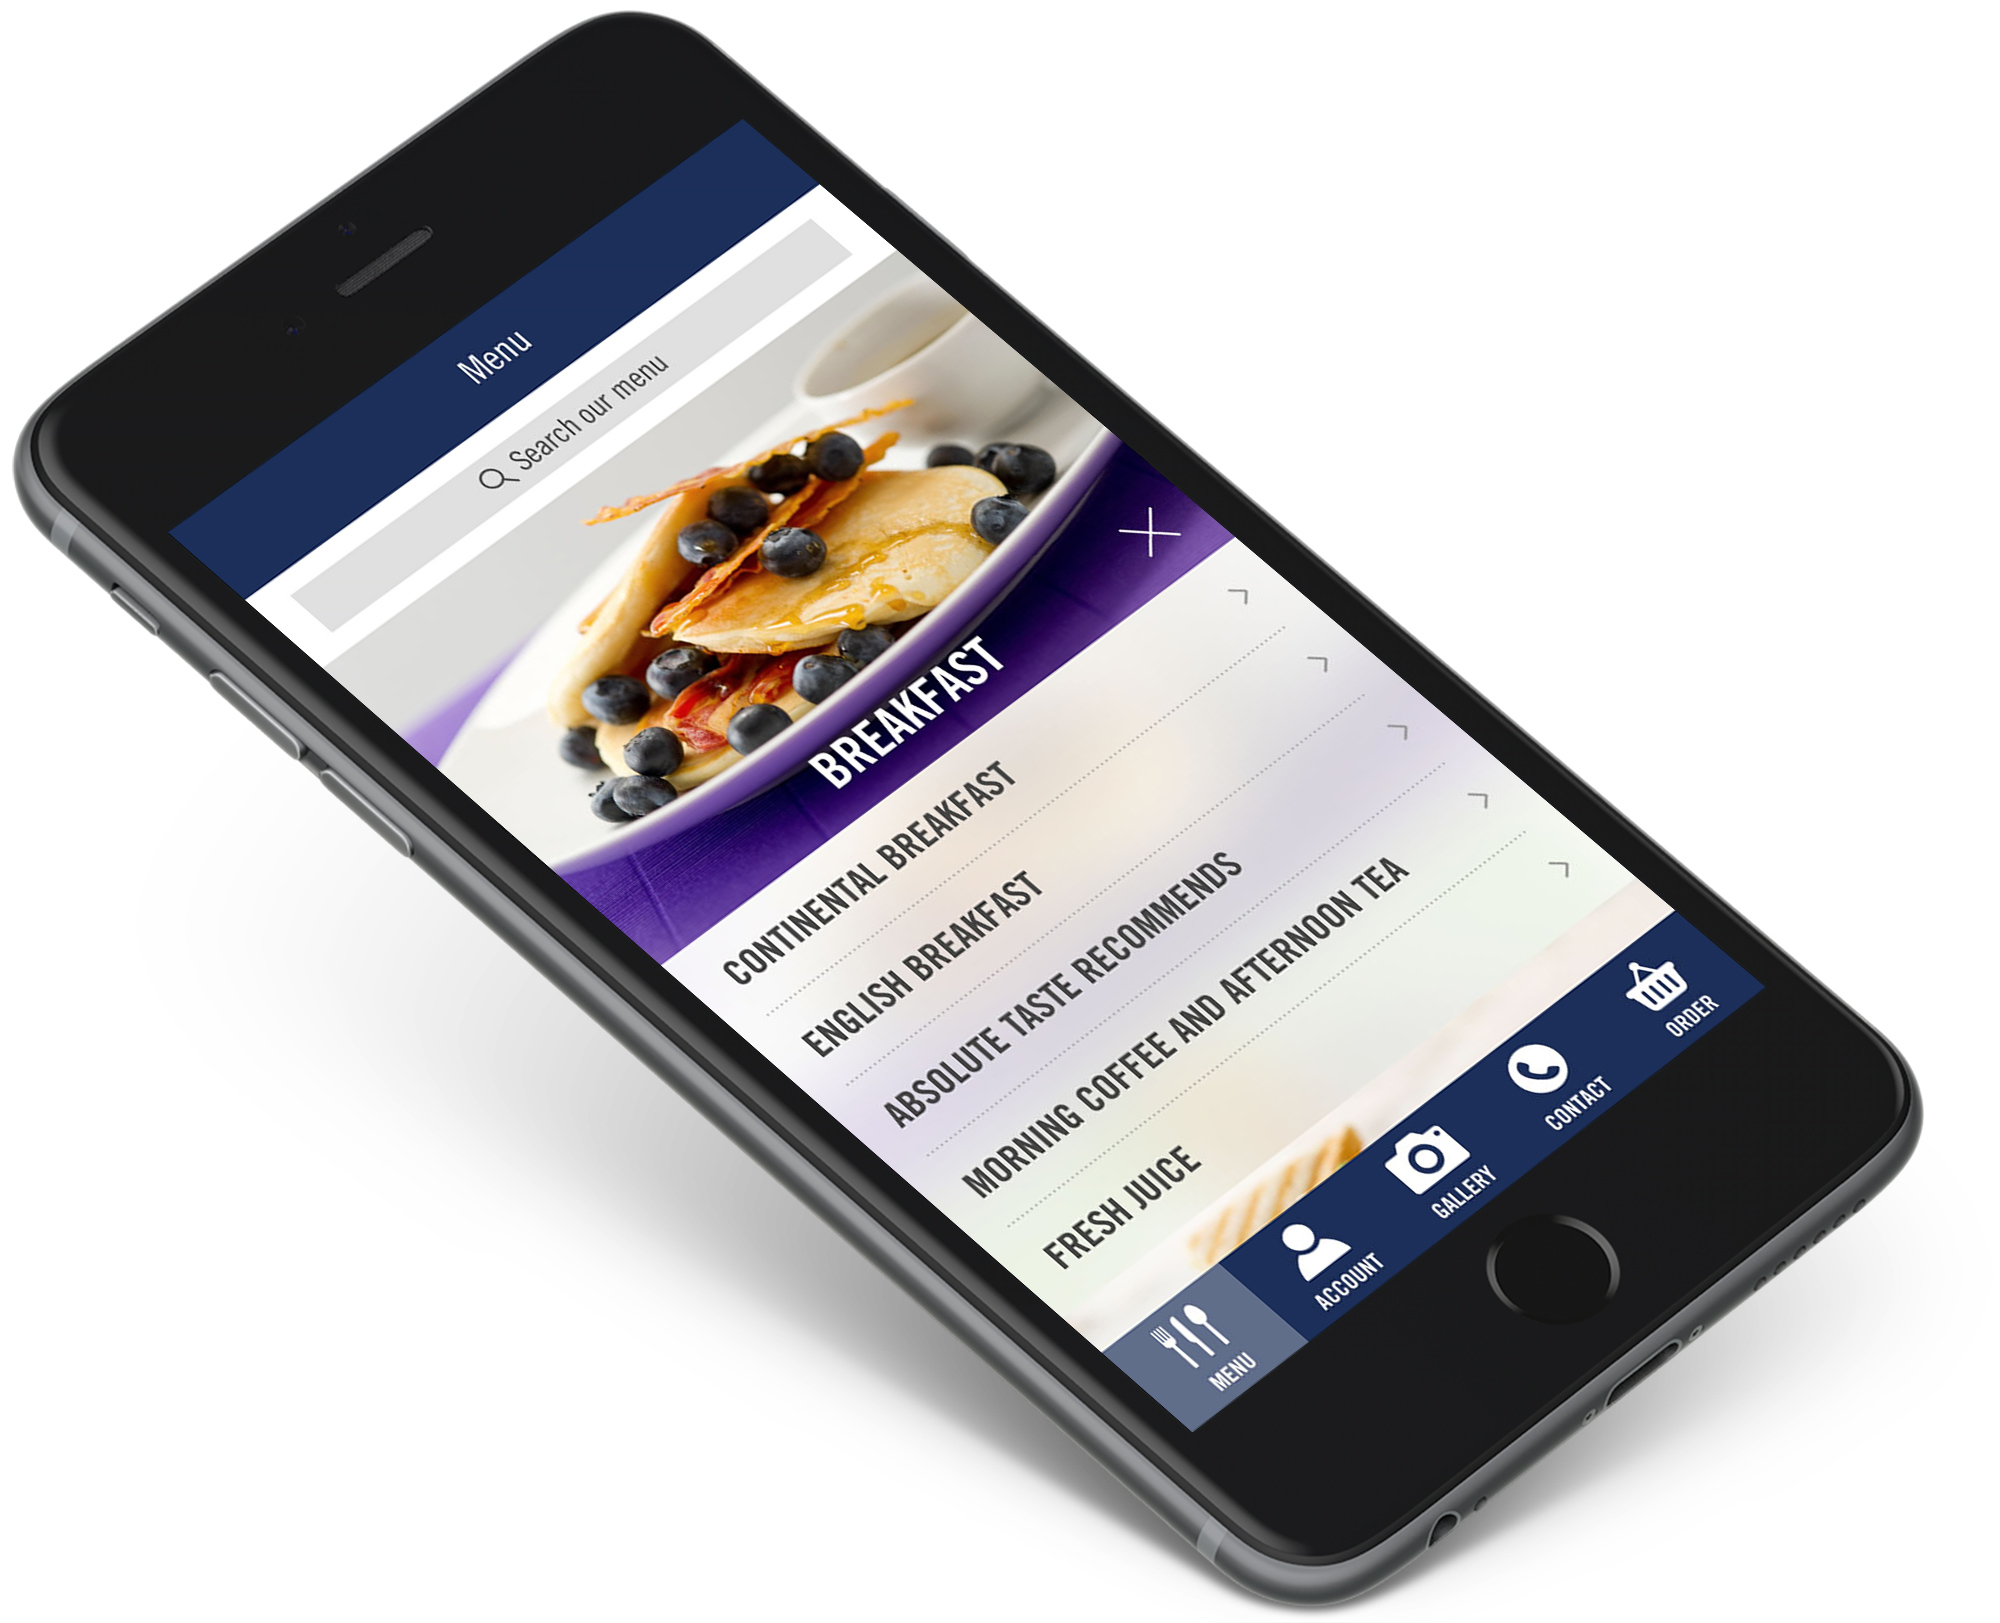 Absolute Taste app menu screen UI design on mobile